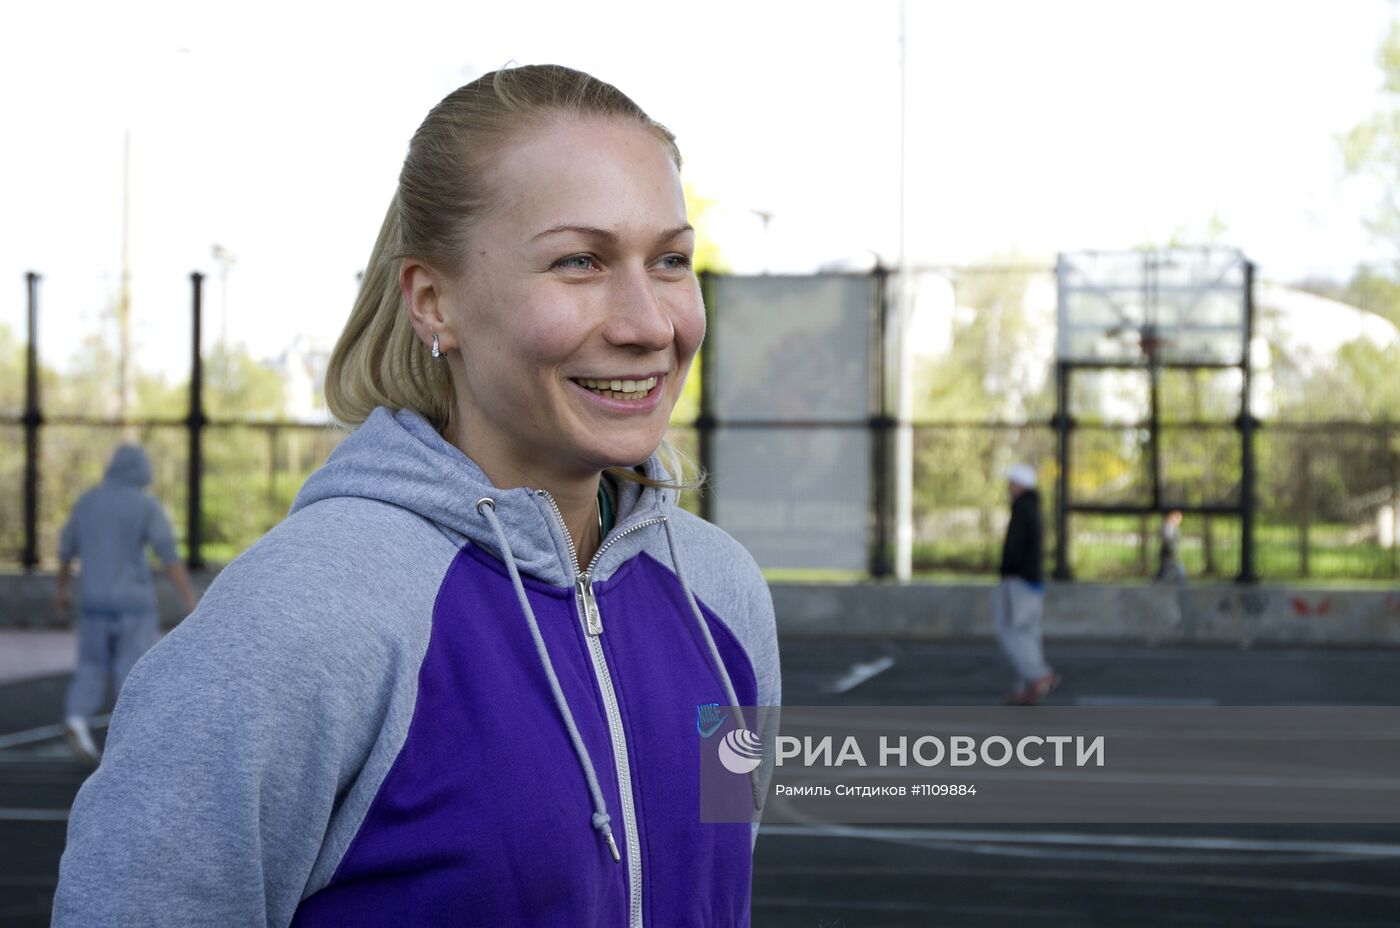 Интервью с российской баскетболисткой Татьяной Поповой